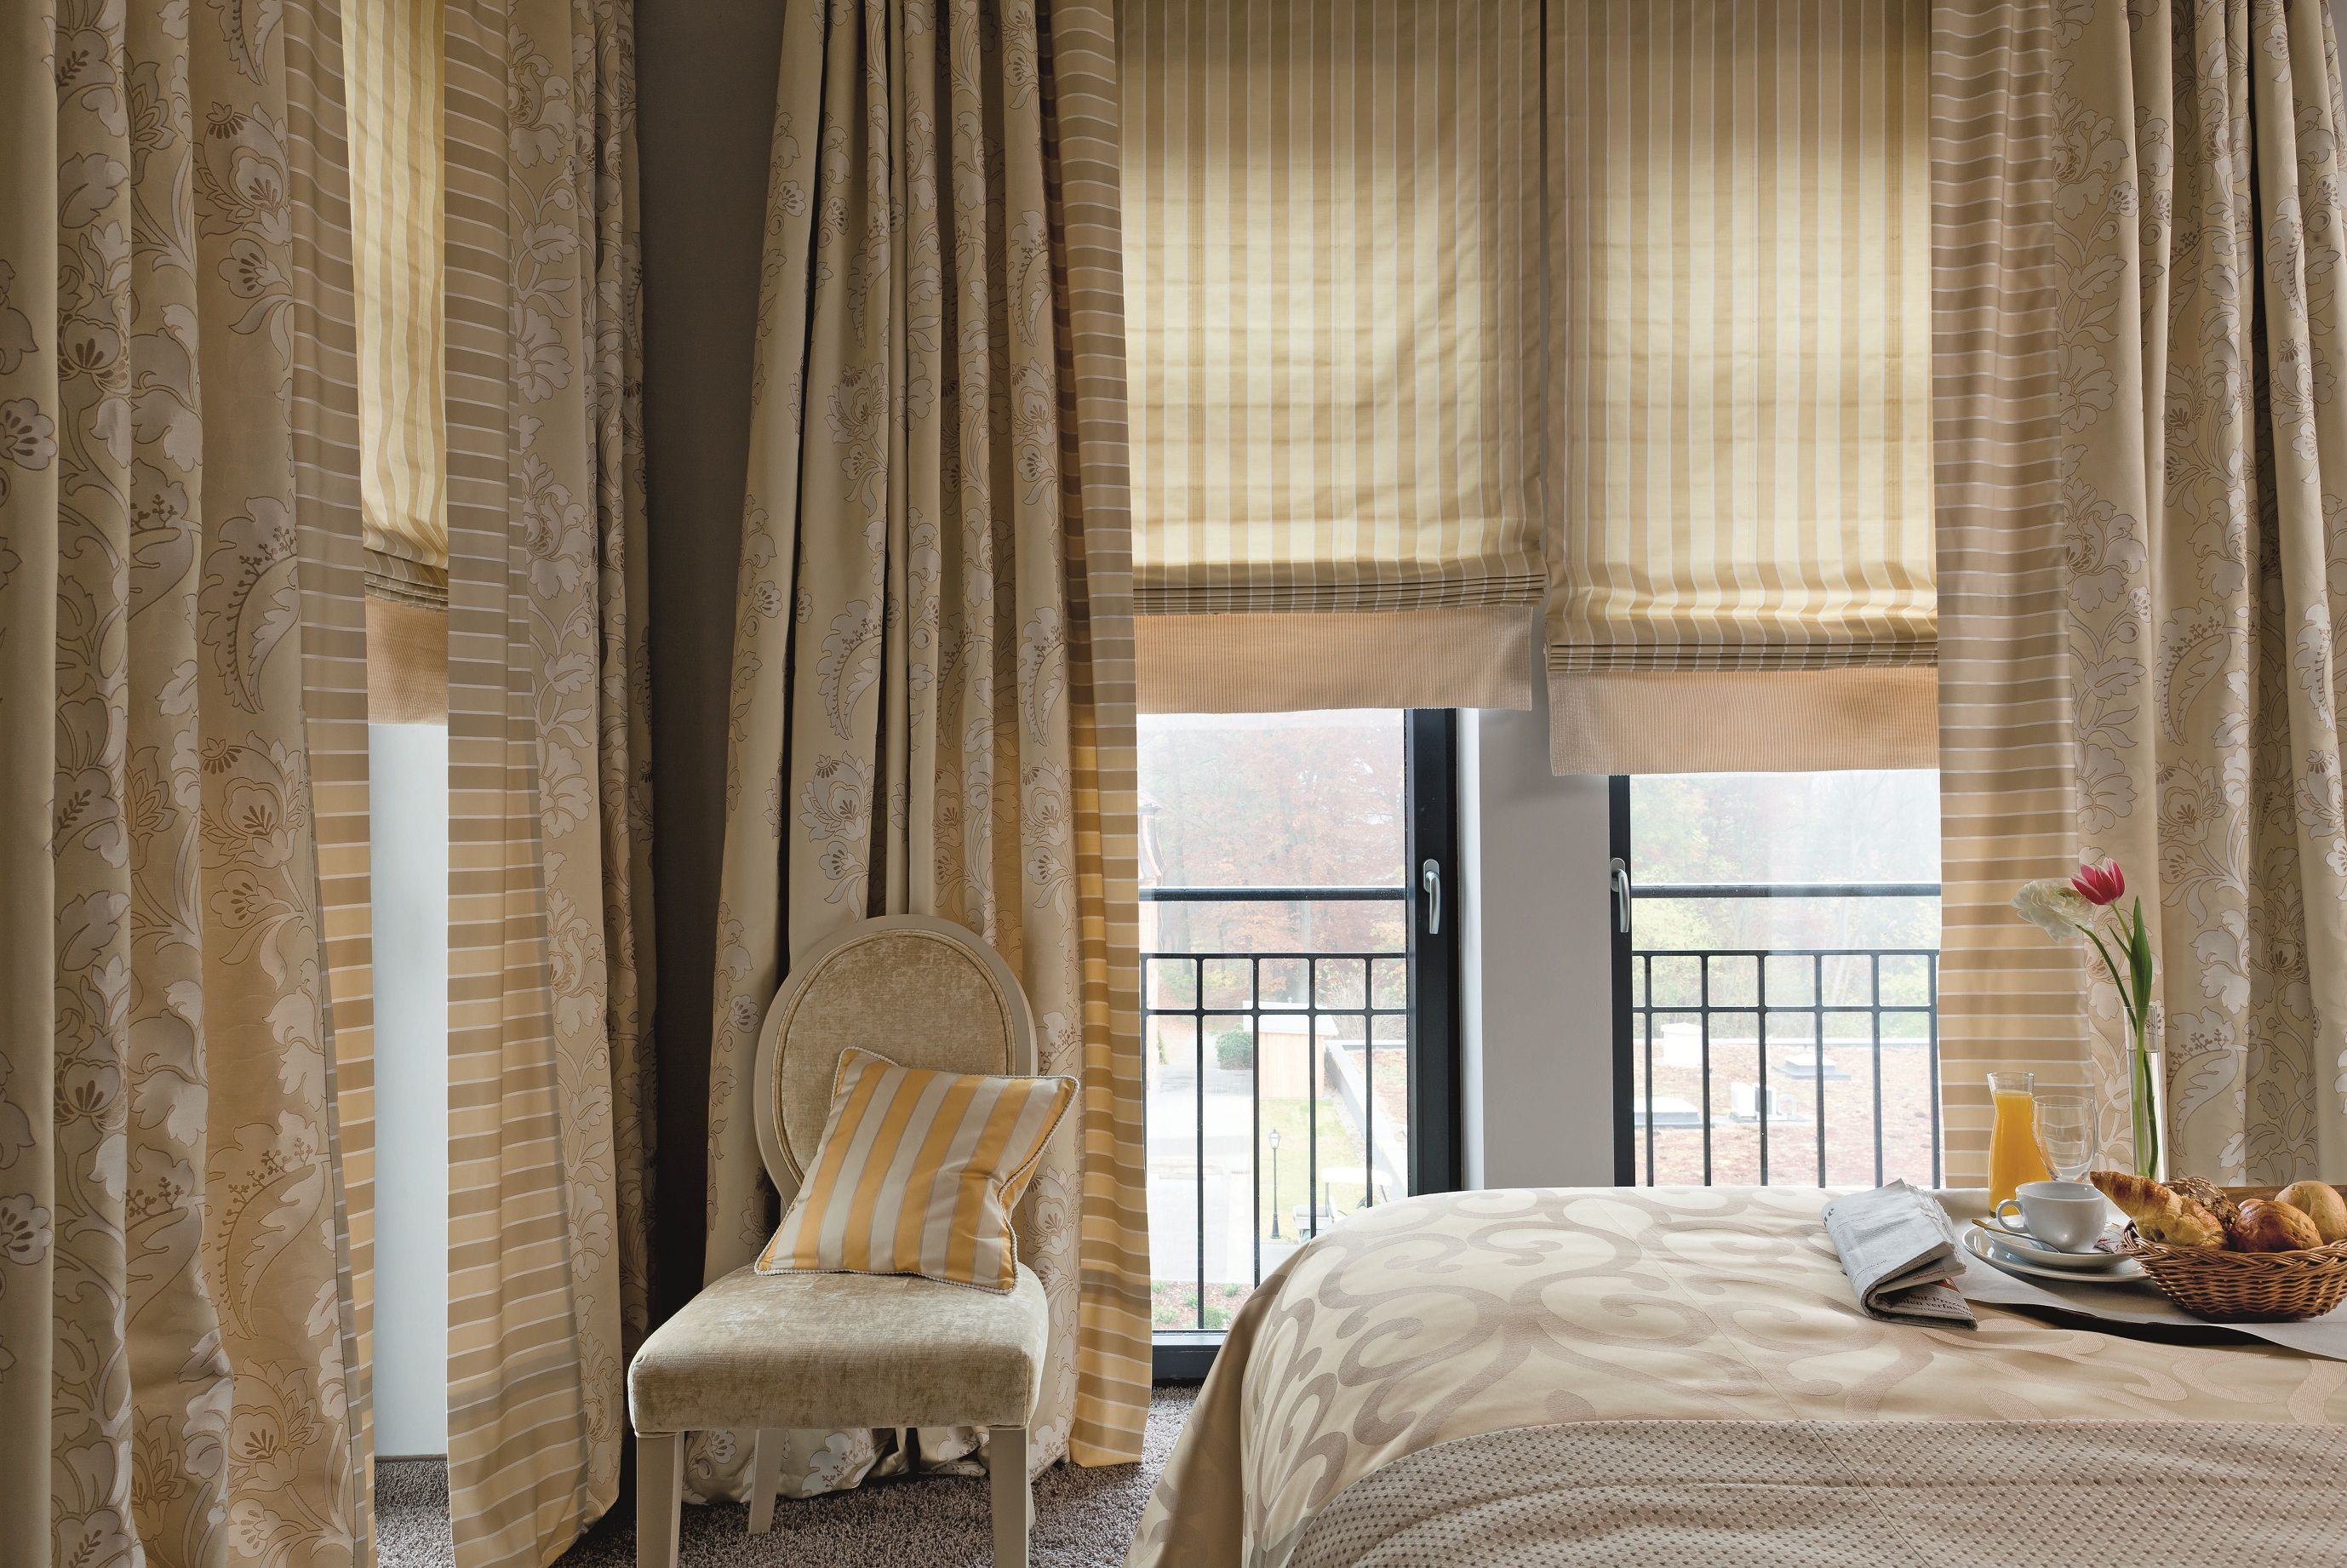 gardiner för panoramafönster dekorativa idéer